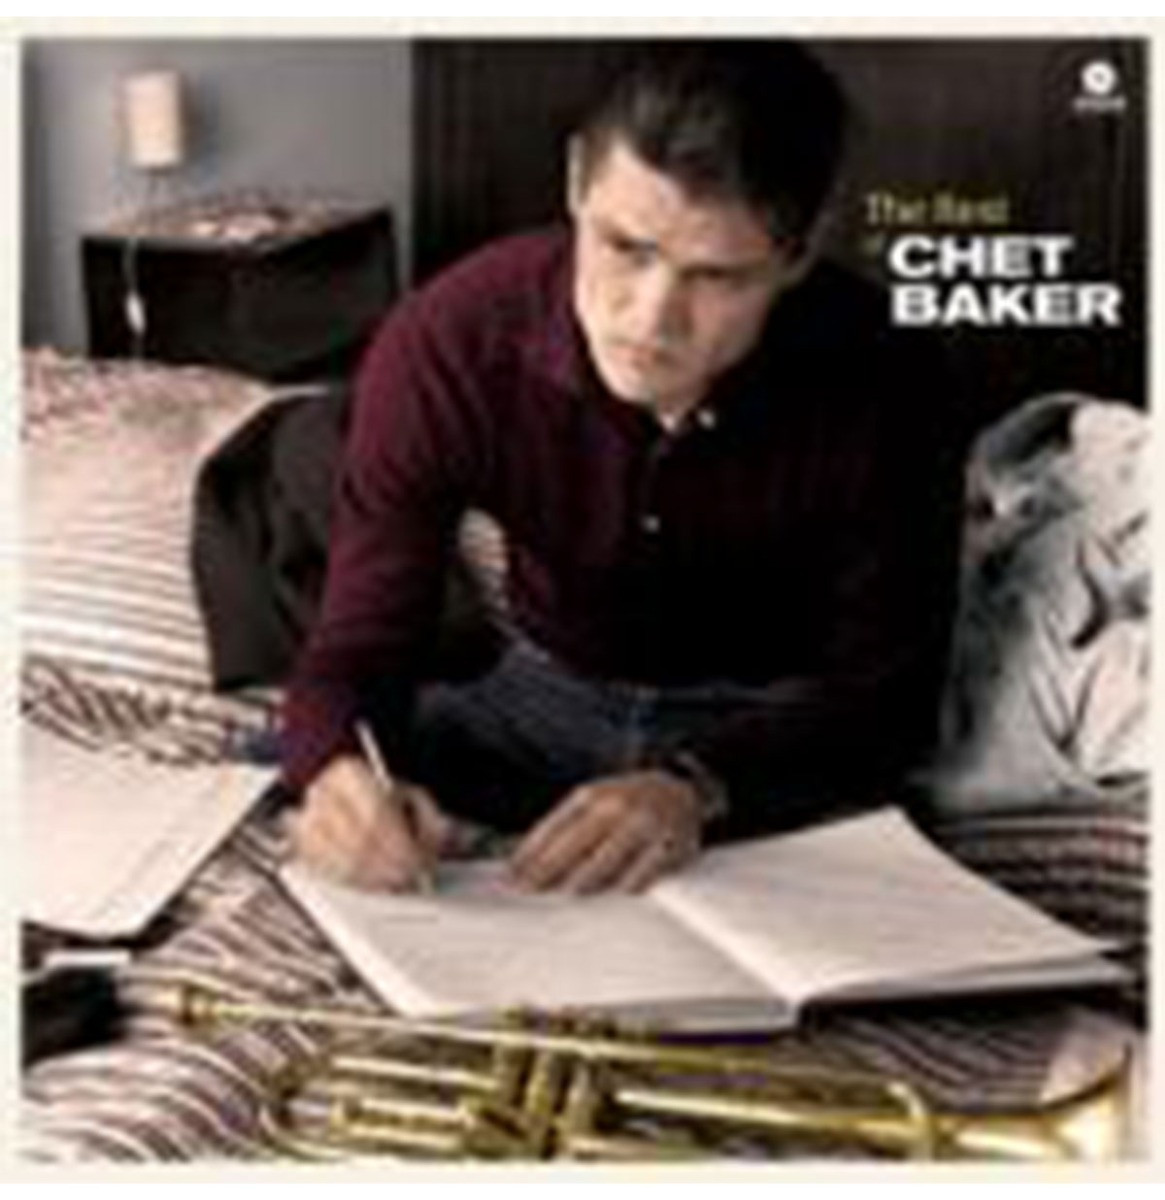 Chet Baker - The Best Of Chet Baker LP